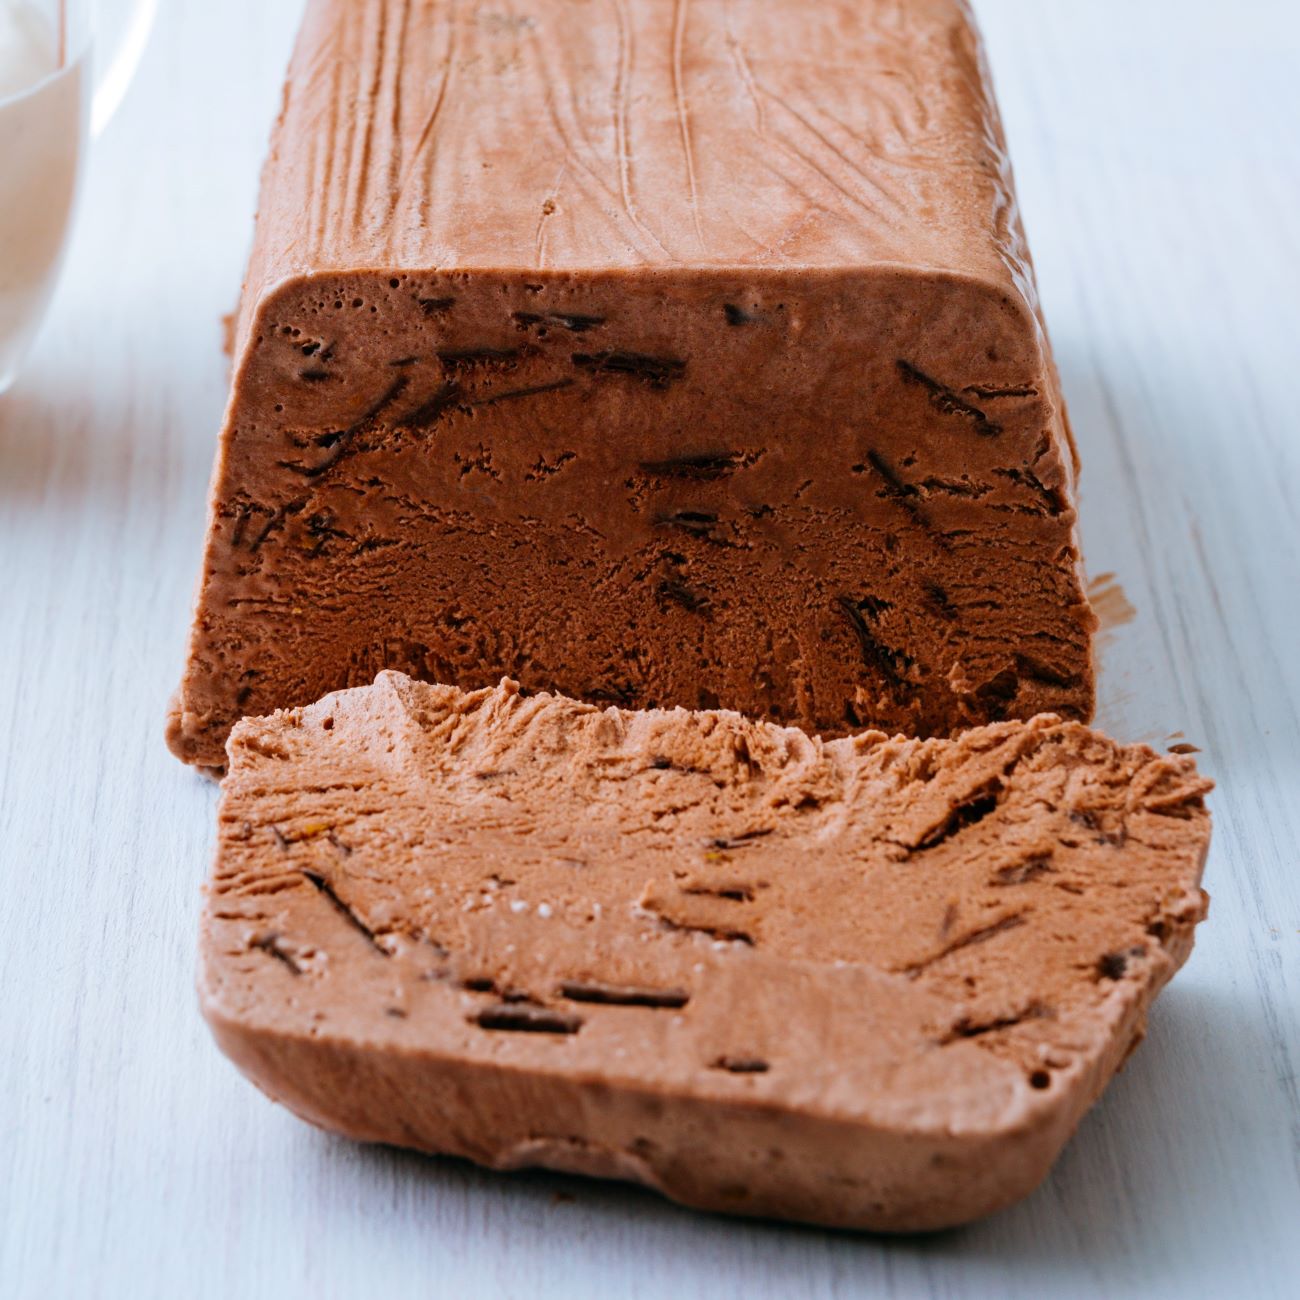 Čokoladni parfait je prikazan razrezan na belem lesenem krožniku.